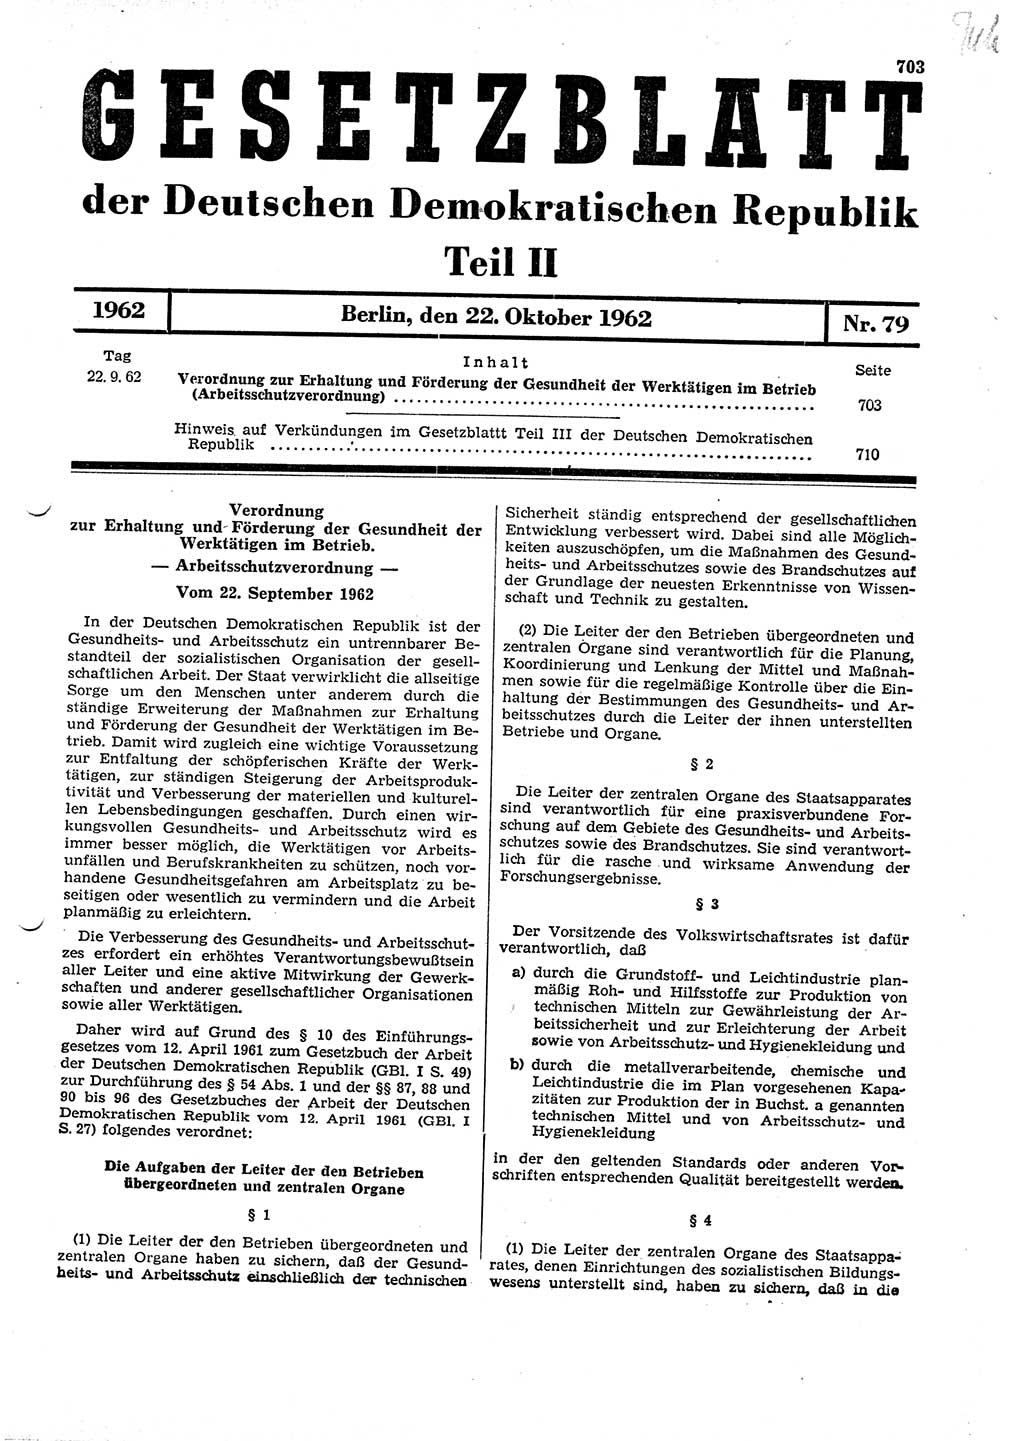 Gesetzblatt (GBl.) der Deutschen Demokratischen Republik (DDR) Teil ⅠⅠ 1962, Seite 703 (GBl. DDR ⅠⅠ 1962, S. 703)